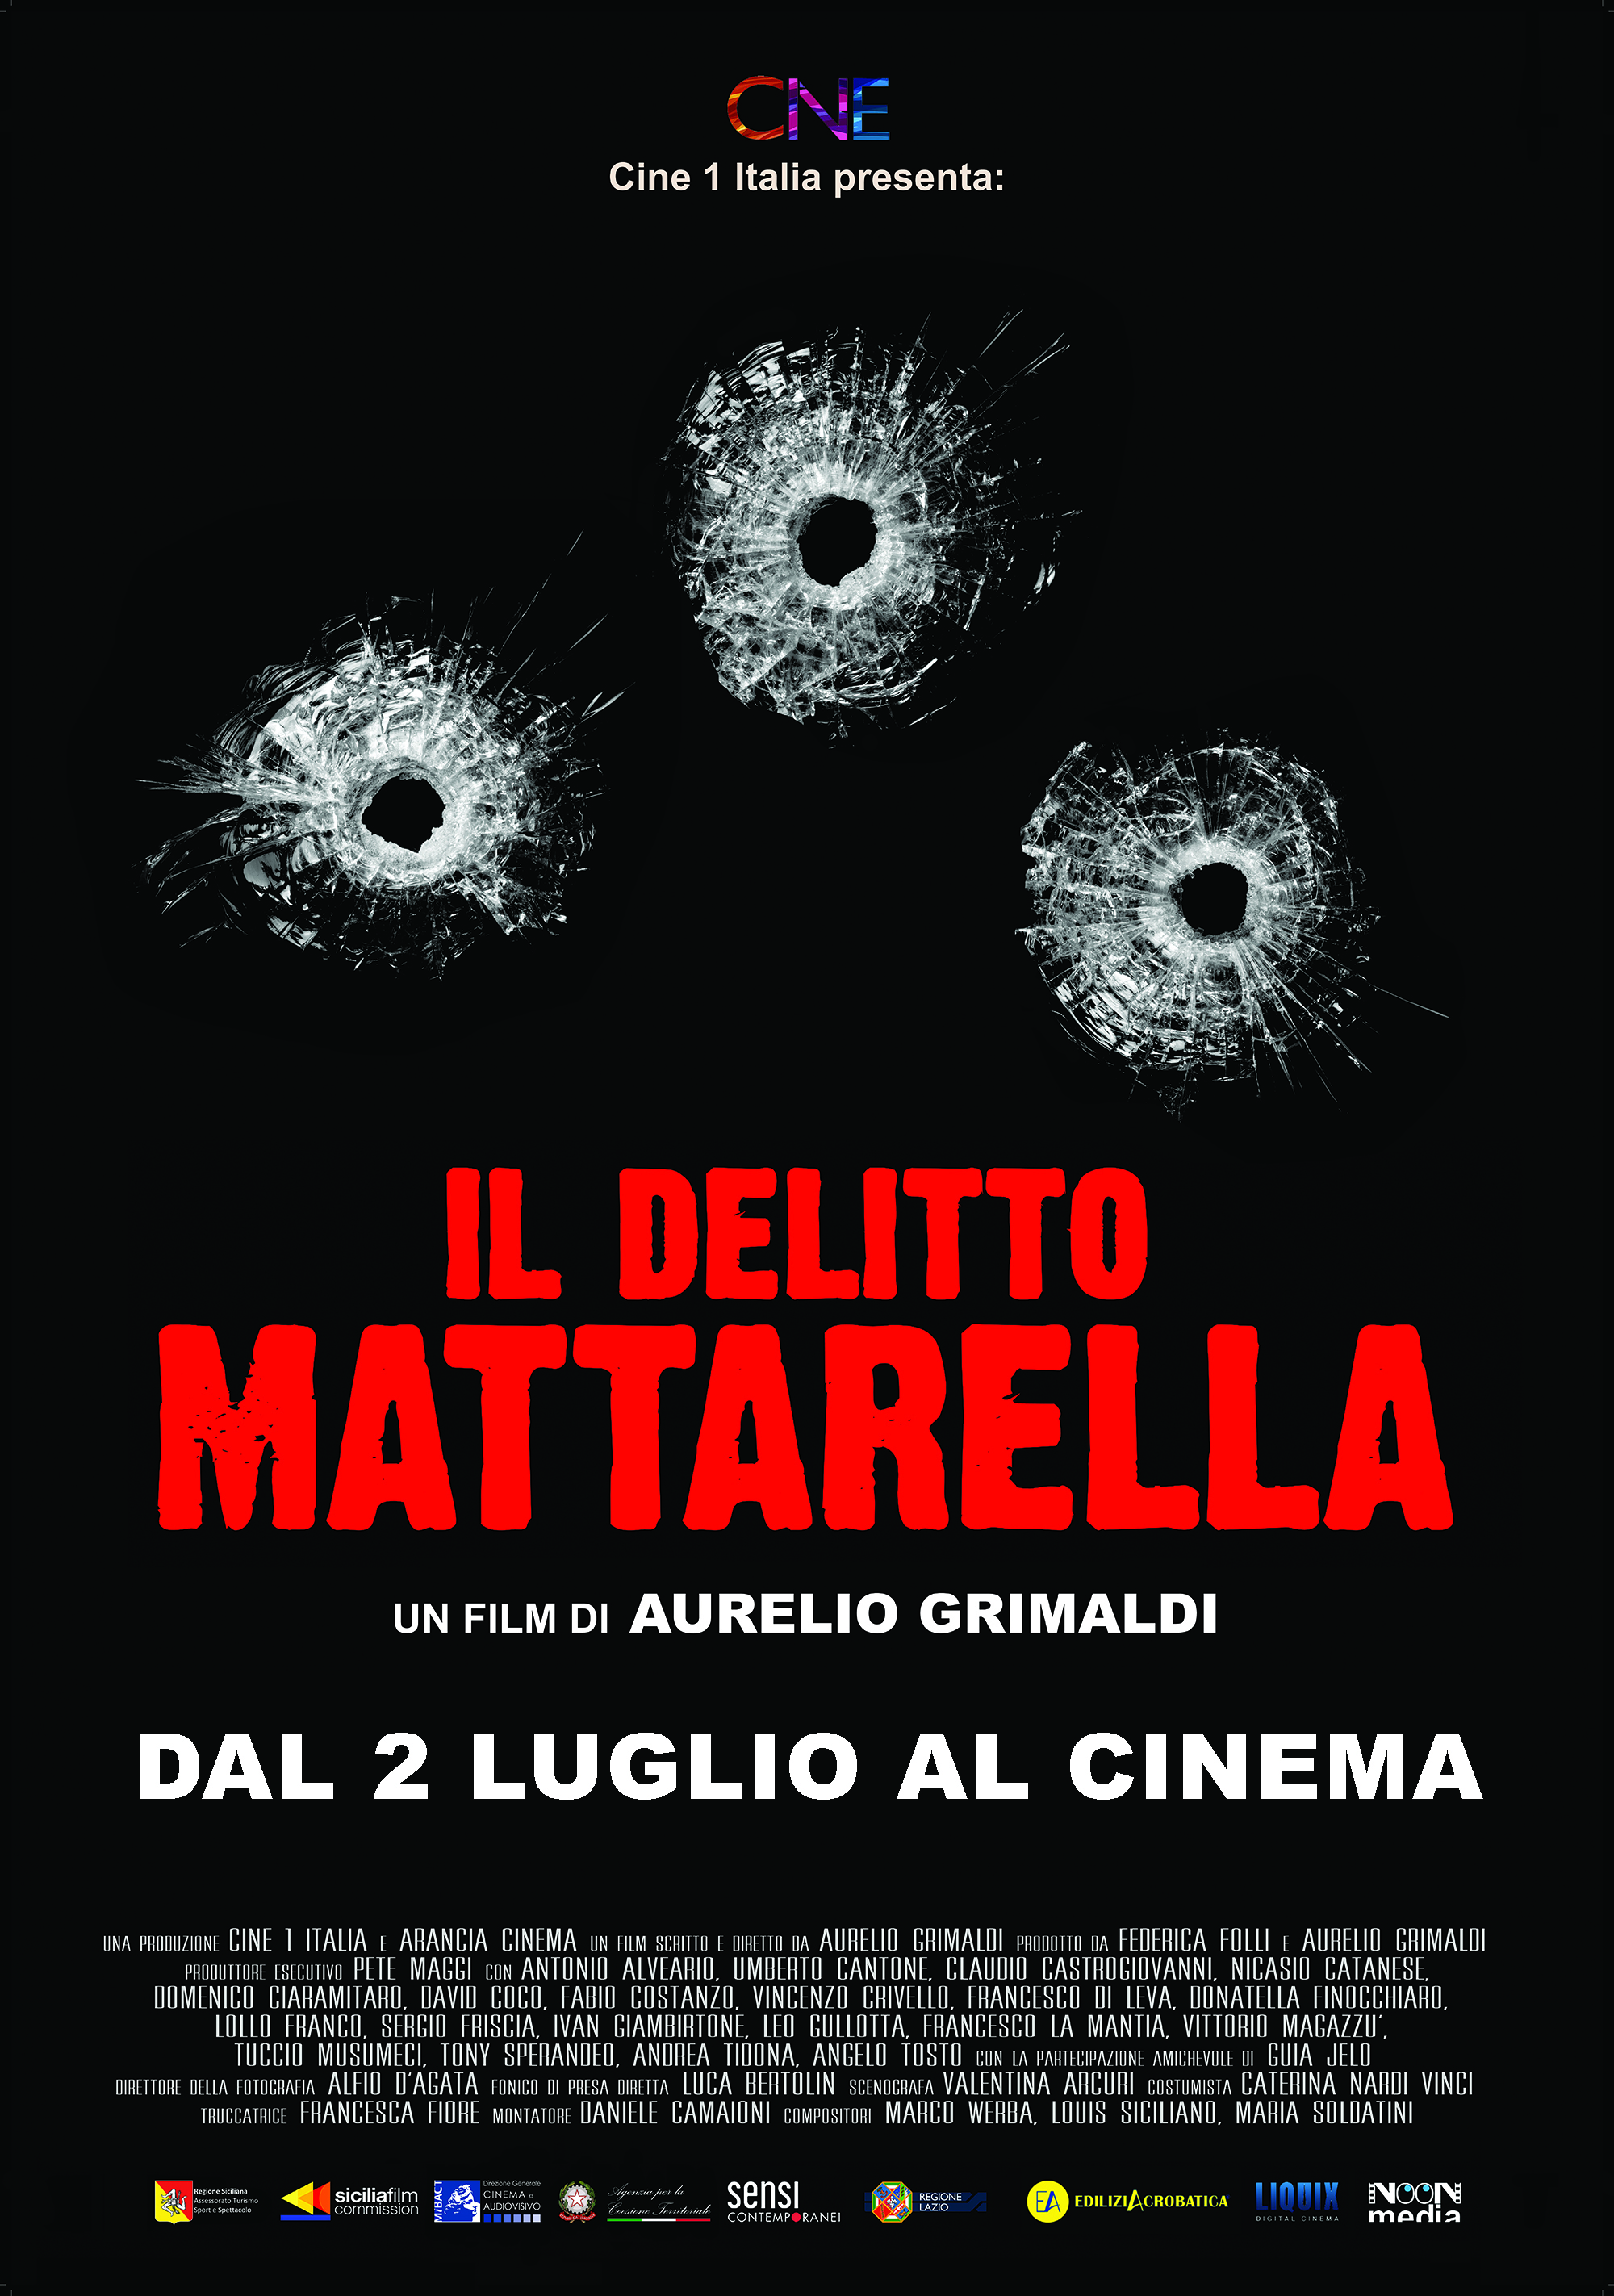 poster2luglio_DELITTO_MATTARELLA